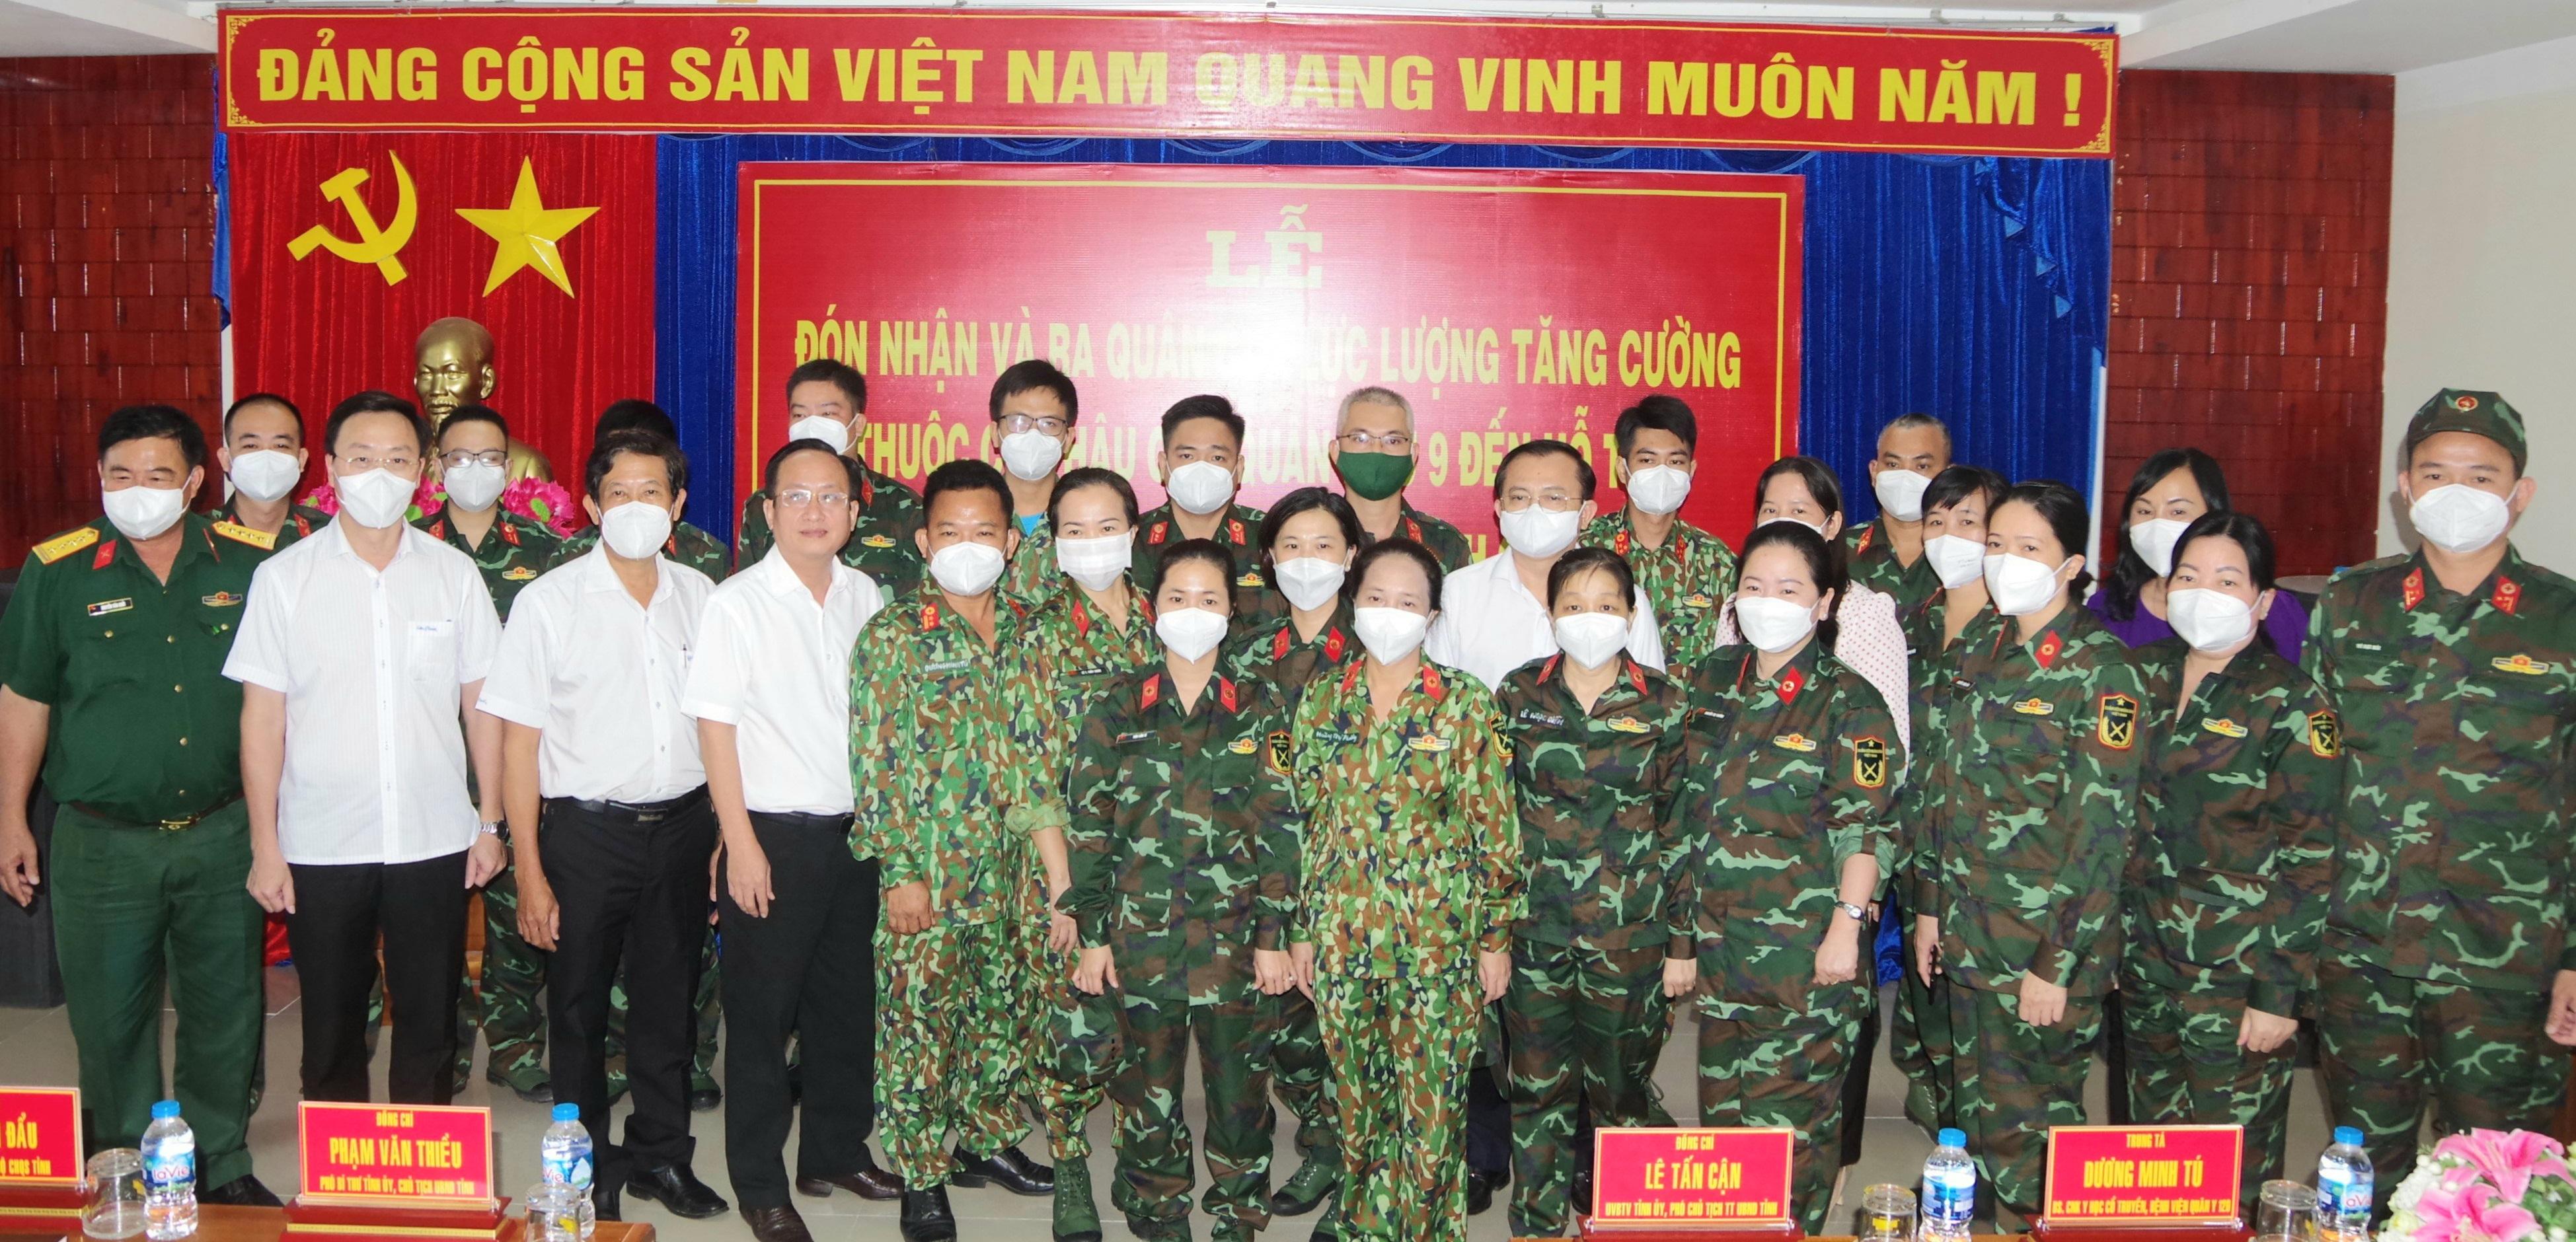 Quân khu 9: Nơi gắn bó của những người lính và đồng đội, Quân khu 9 được biết đến là đơn vị quân sự uy tín của đất nước. Bạn muốn biết thêm về những người hùng của quân đội Việt Nam? Hãy xem các hình ảnh liên quan đến Quân khu 9 để cảm nhận sự kiên cường và lòng dũng cảm của họ.